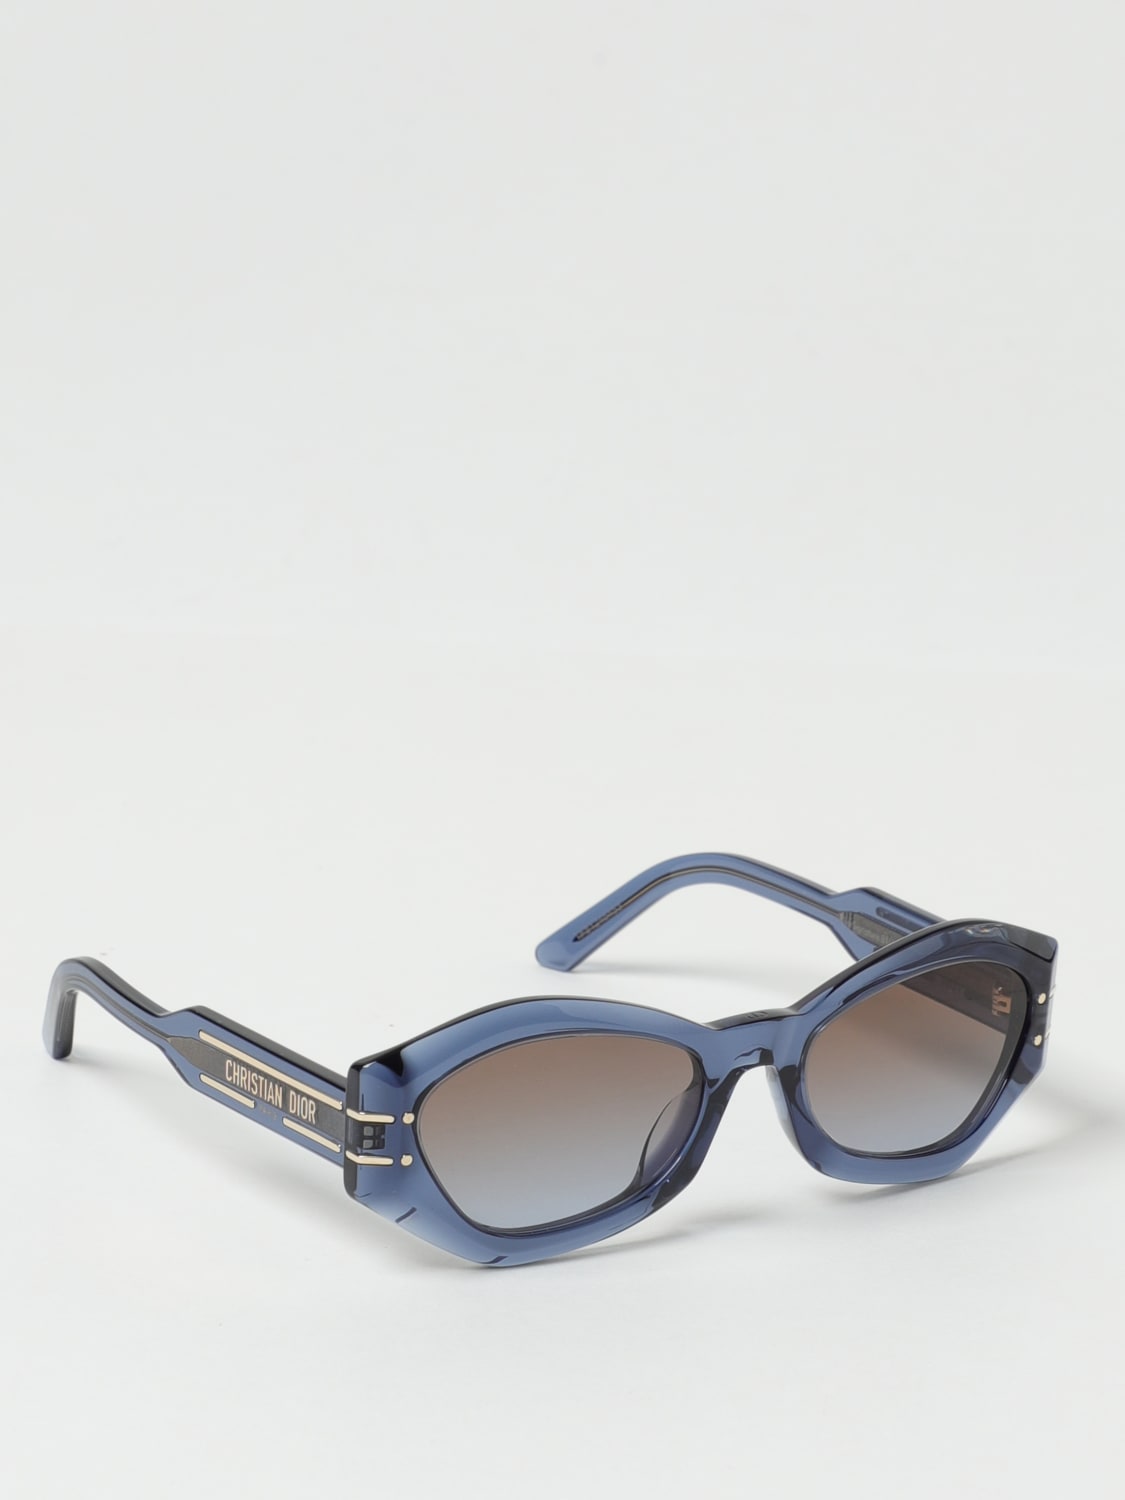 DIOR DiorSignature B1U 55 Blue & White Sunglasses